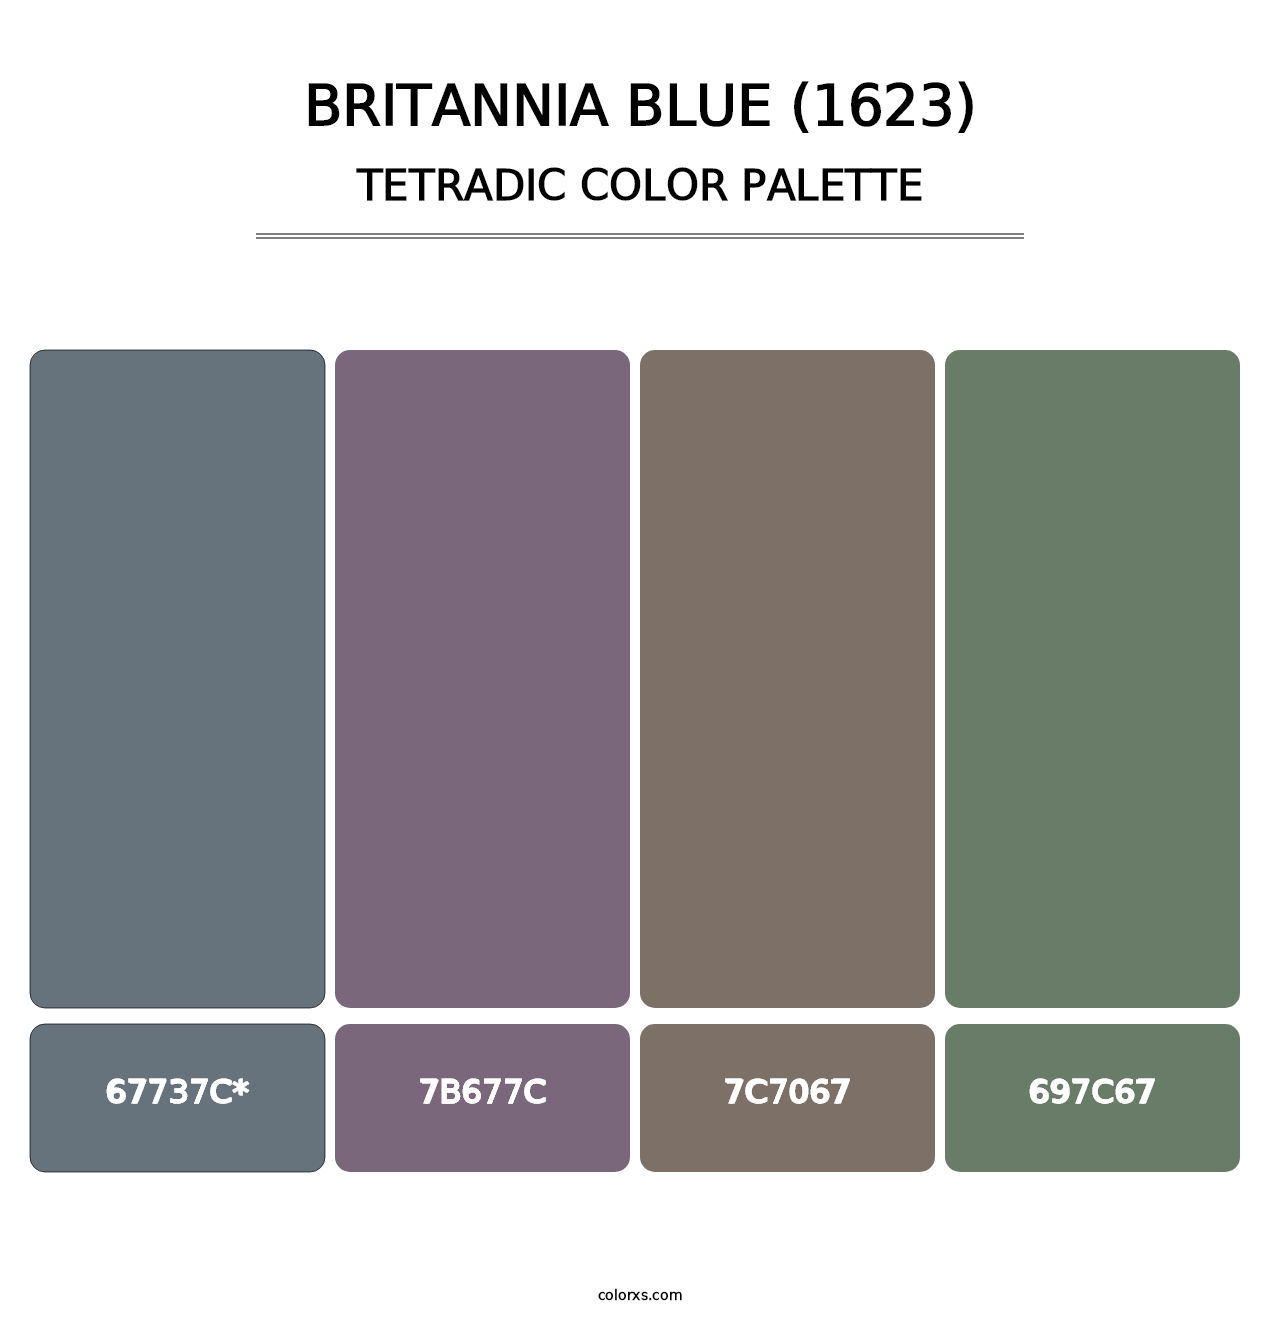 Britannia Blue (1623) - Tetradic Color Palette